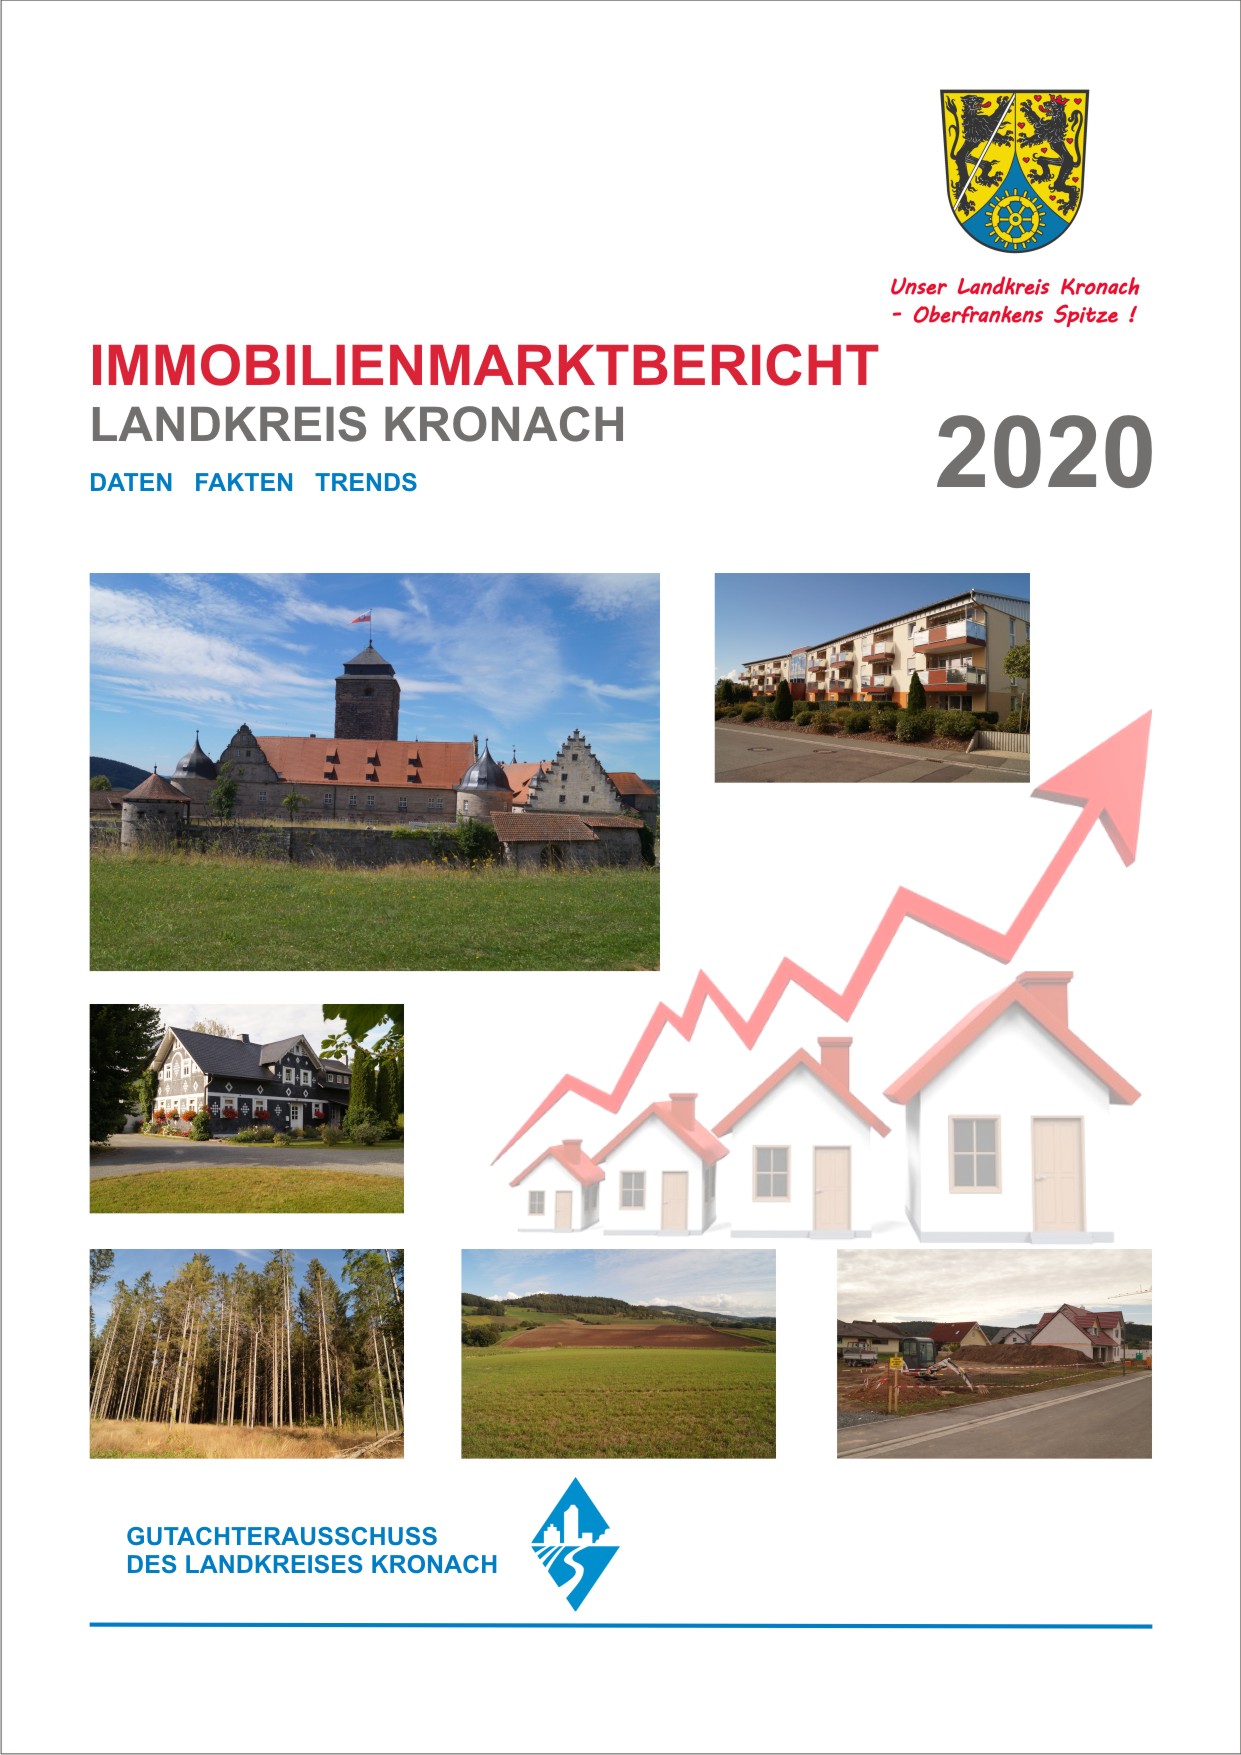 Gutachterausschuss veröffentlicht 1. Immobilienmarktbericht des Landkreises Kronach